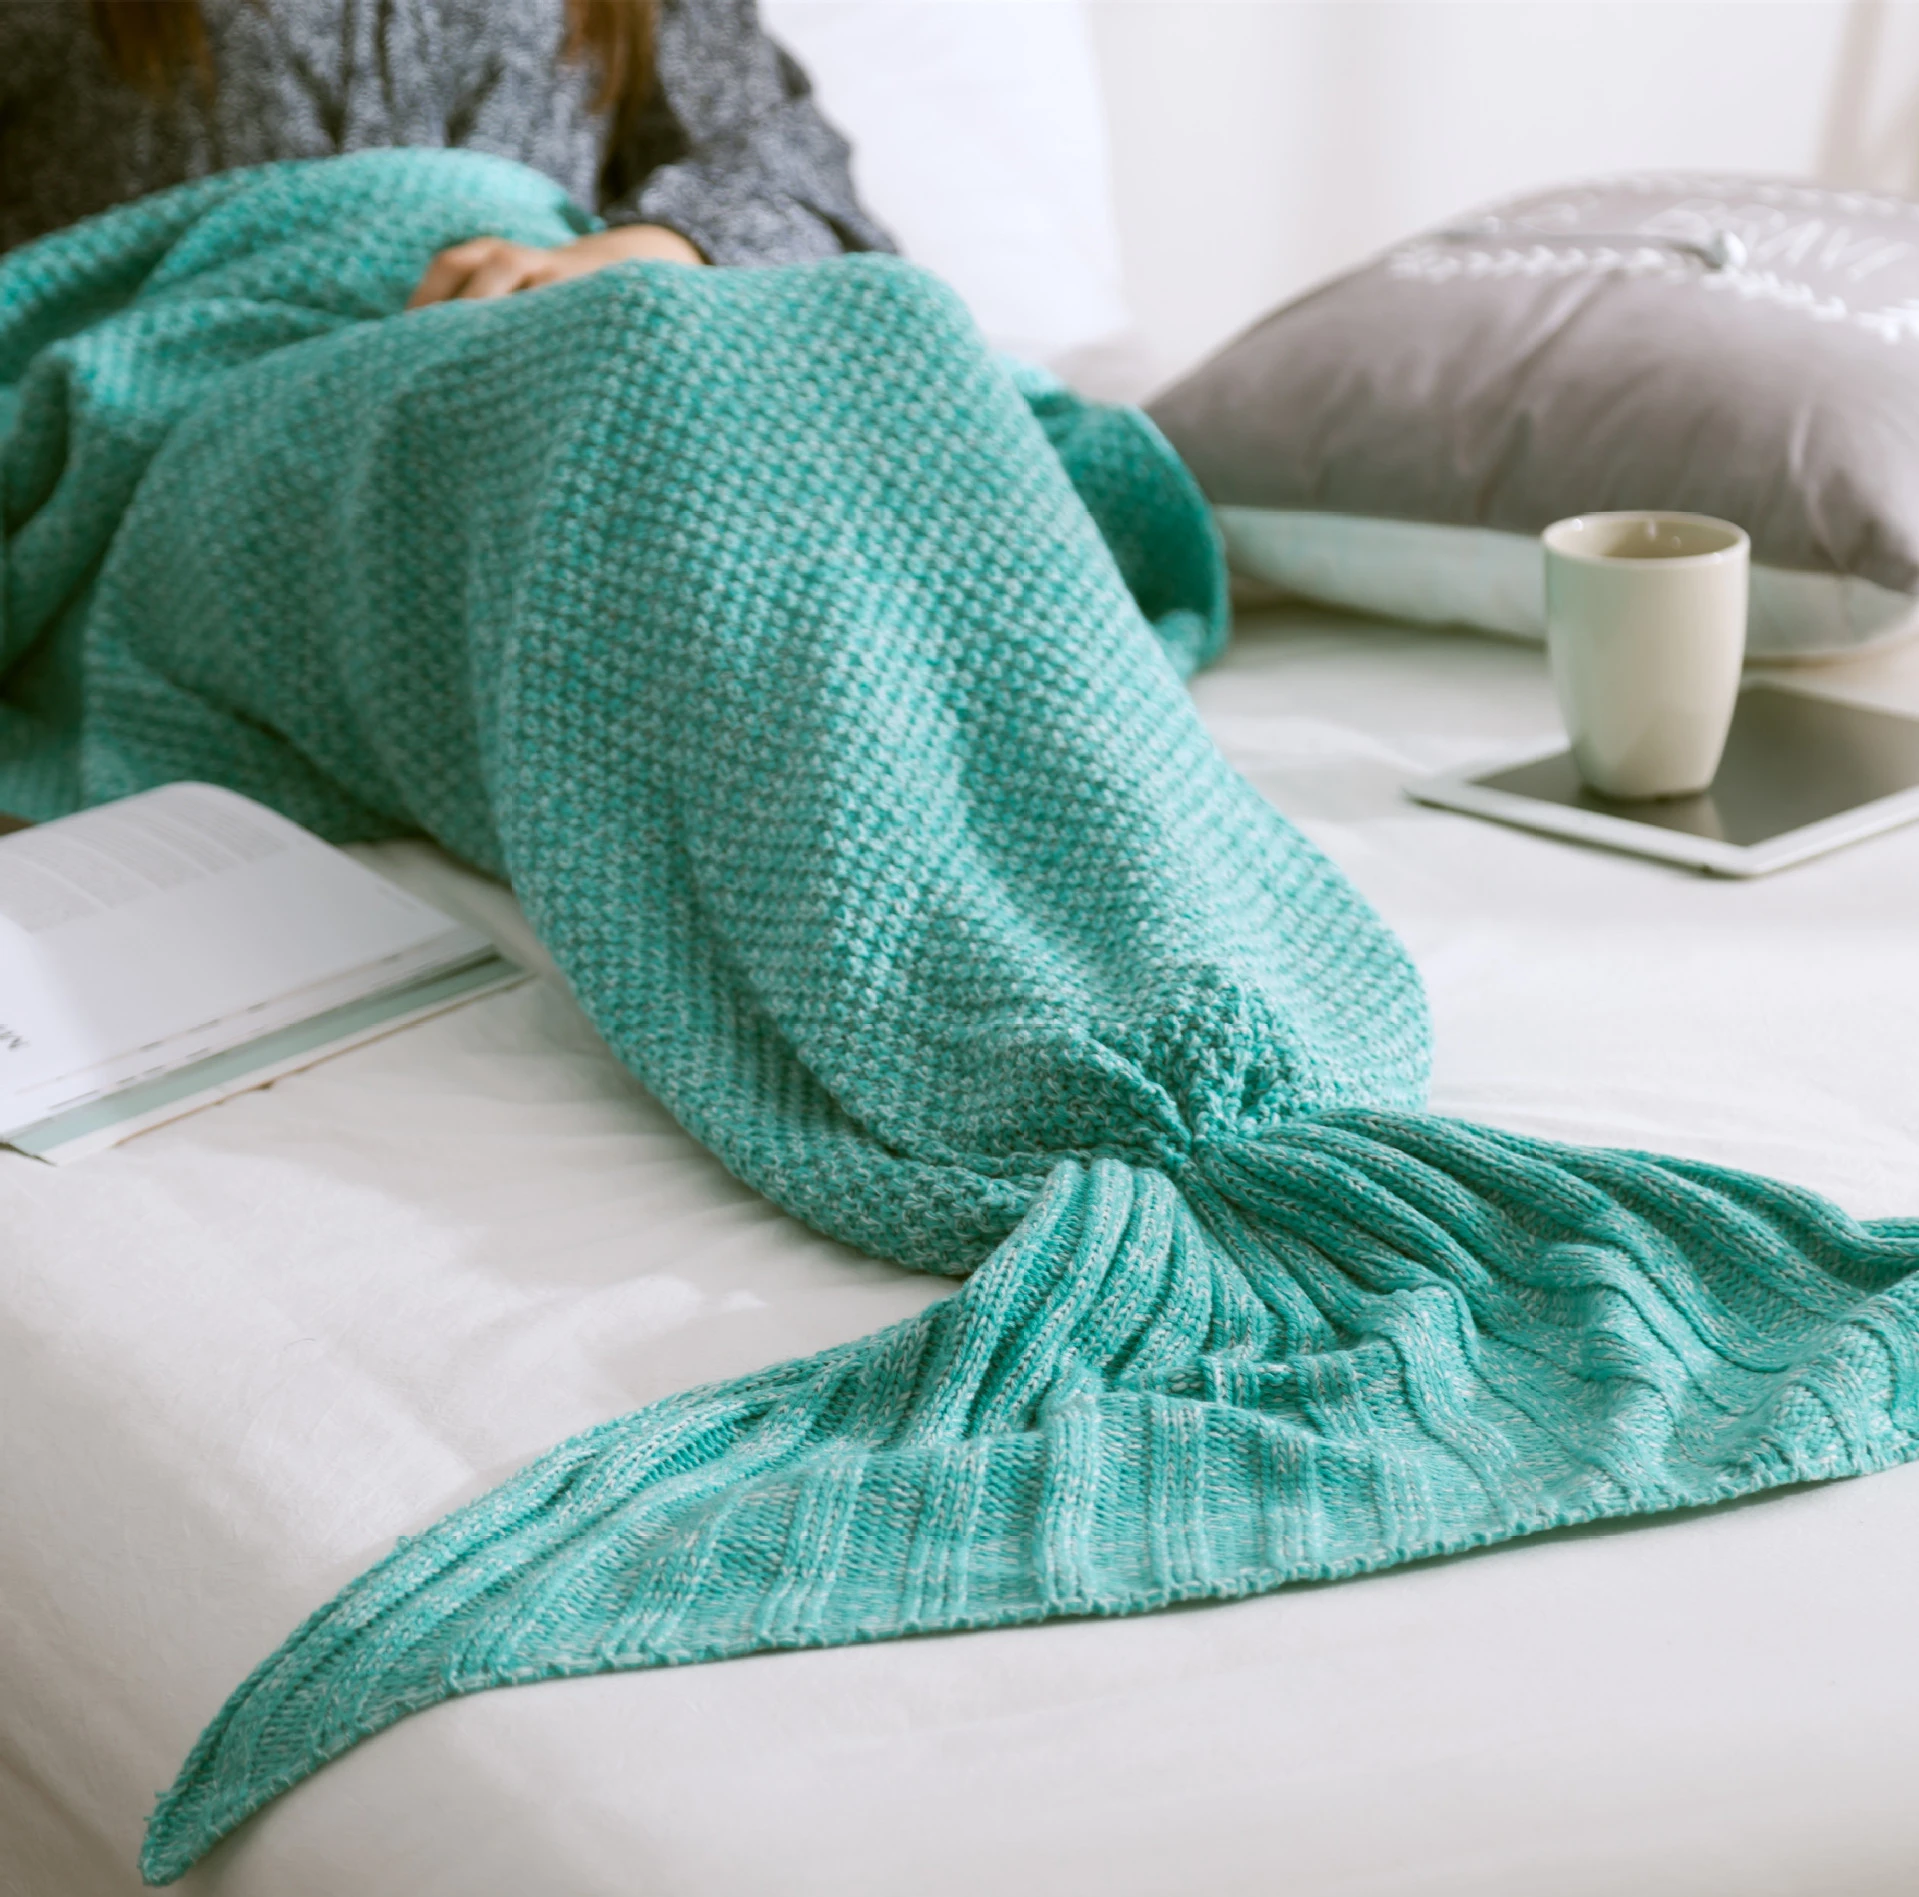 180x80cm Mermaid Tail Blanket Crochet Home Diy Mermaid Blanket For Adult